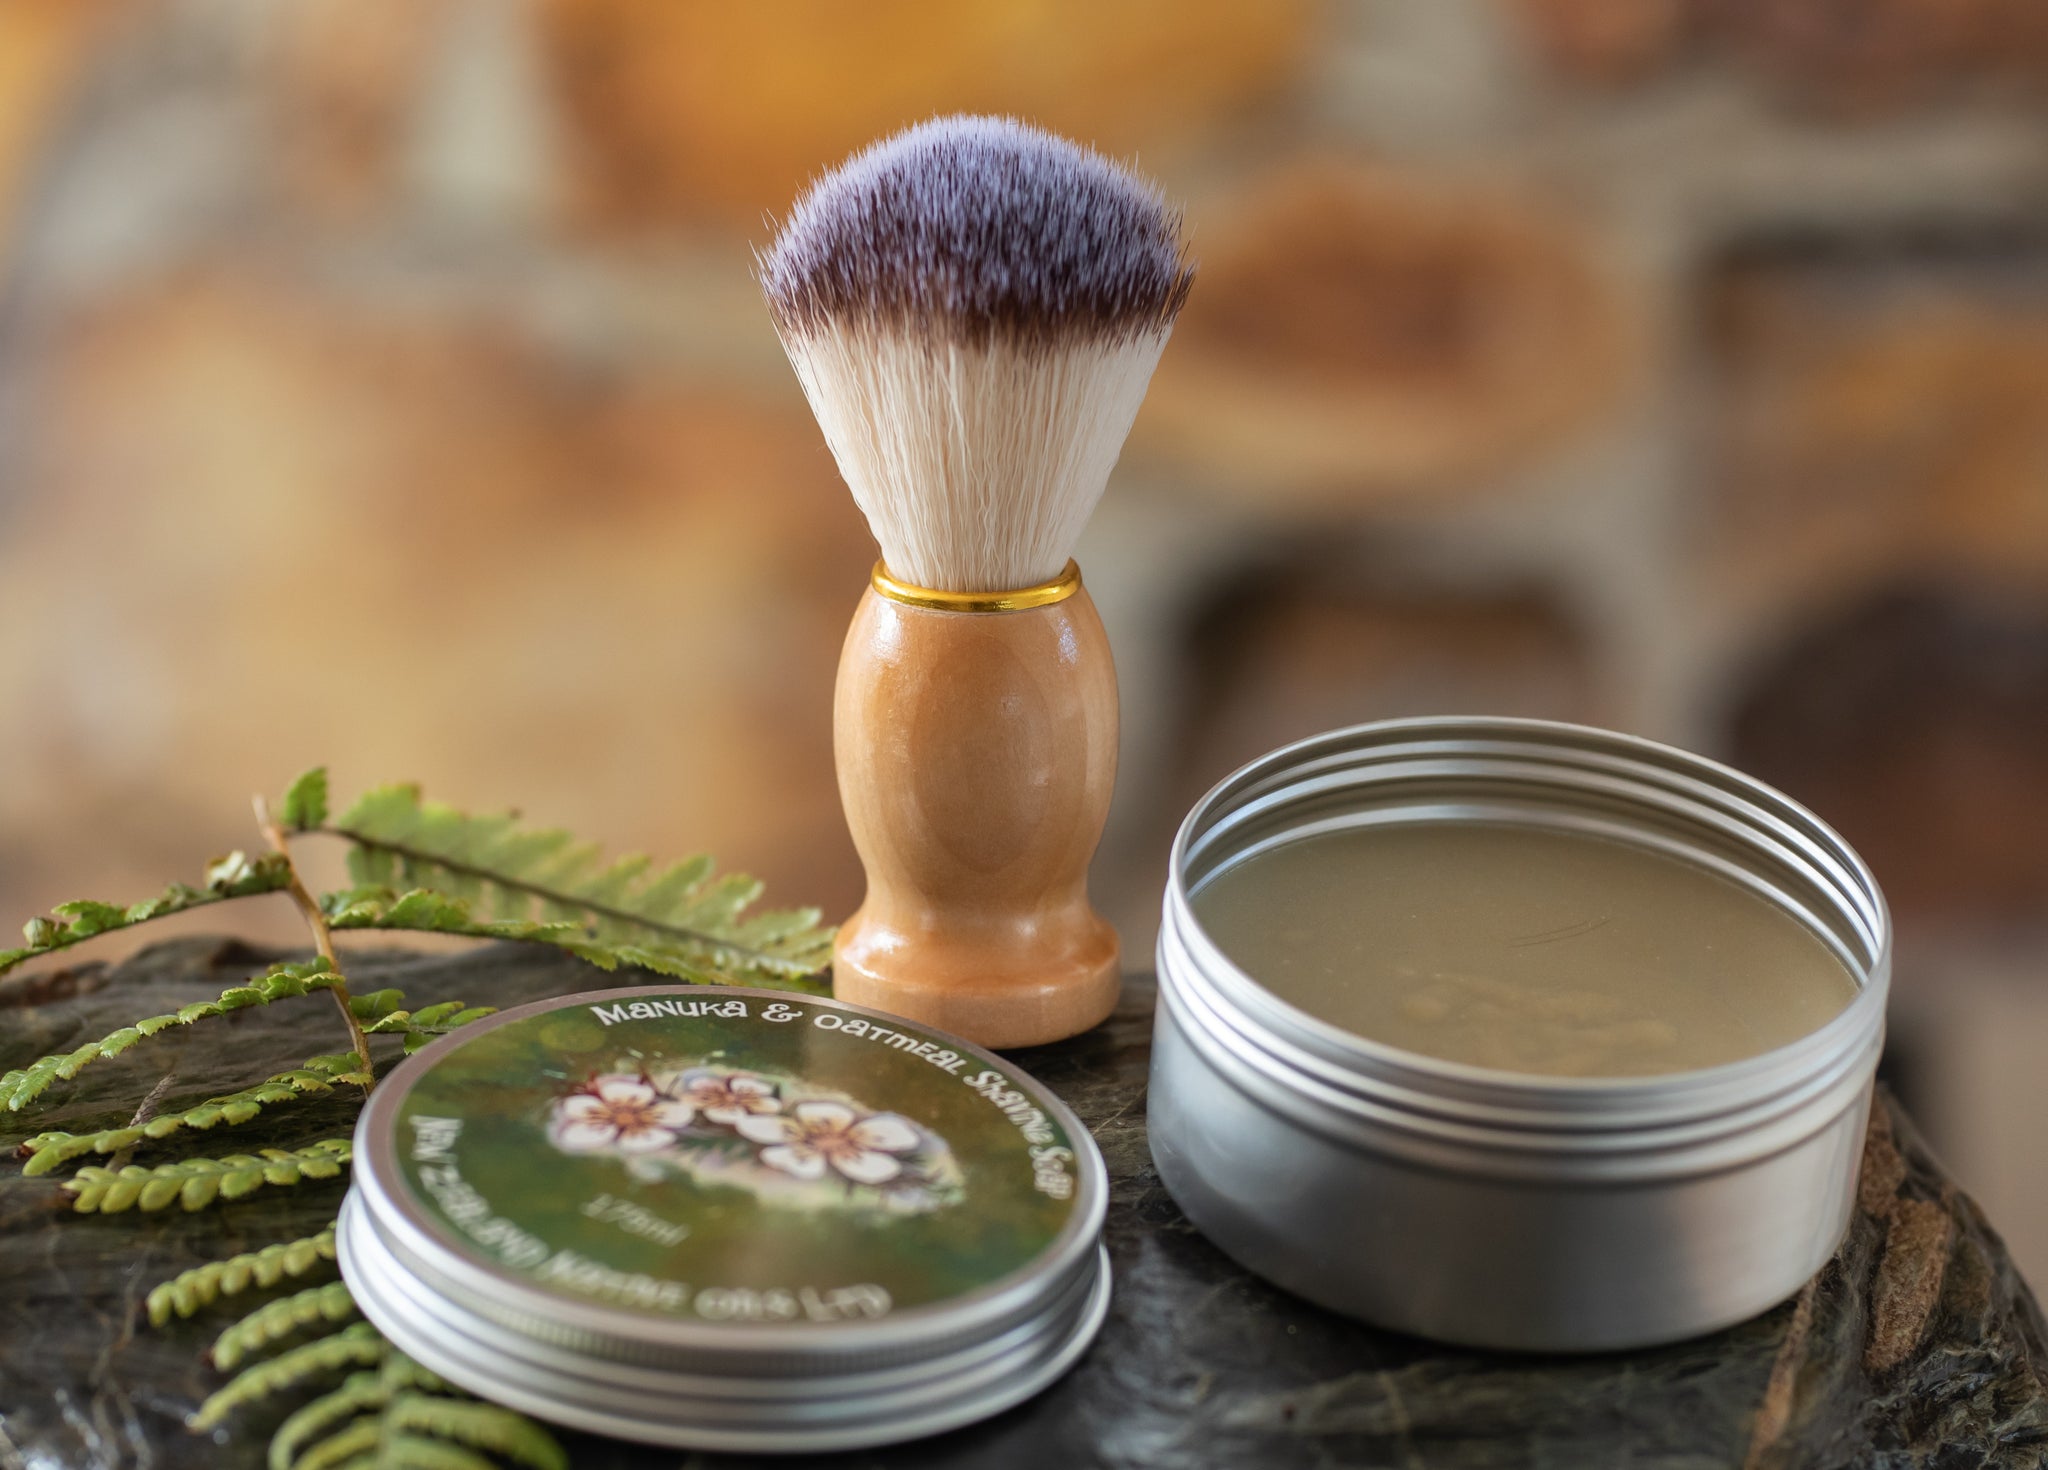 Handmade Shaving Soap In Travel Tin With Wooden Shaving Brush-NZ Native Oils Ltd